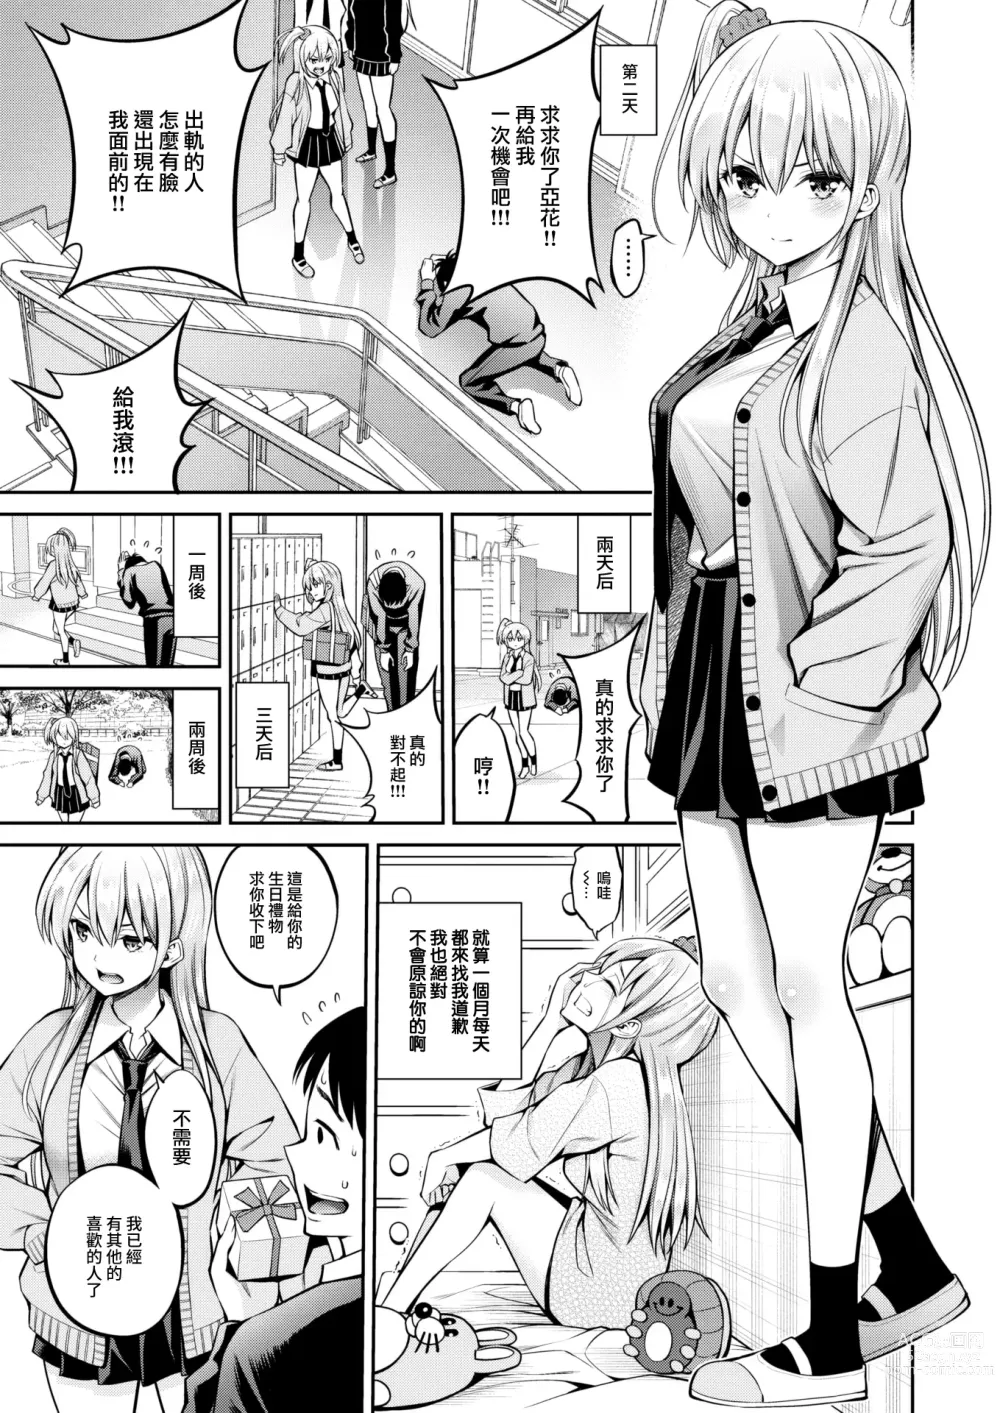 Page 4 of manga Moto Kano